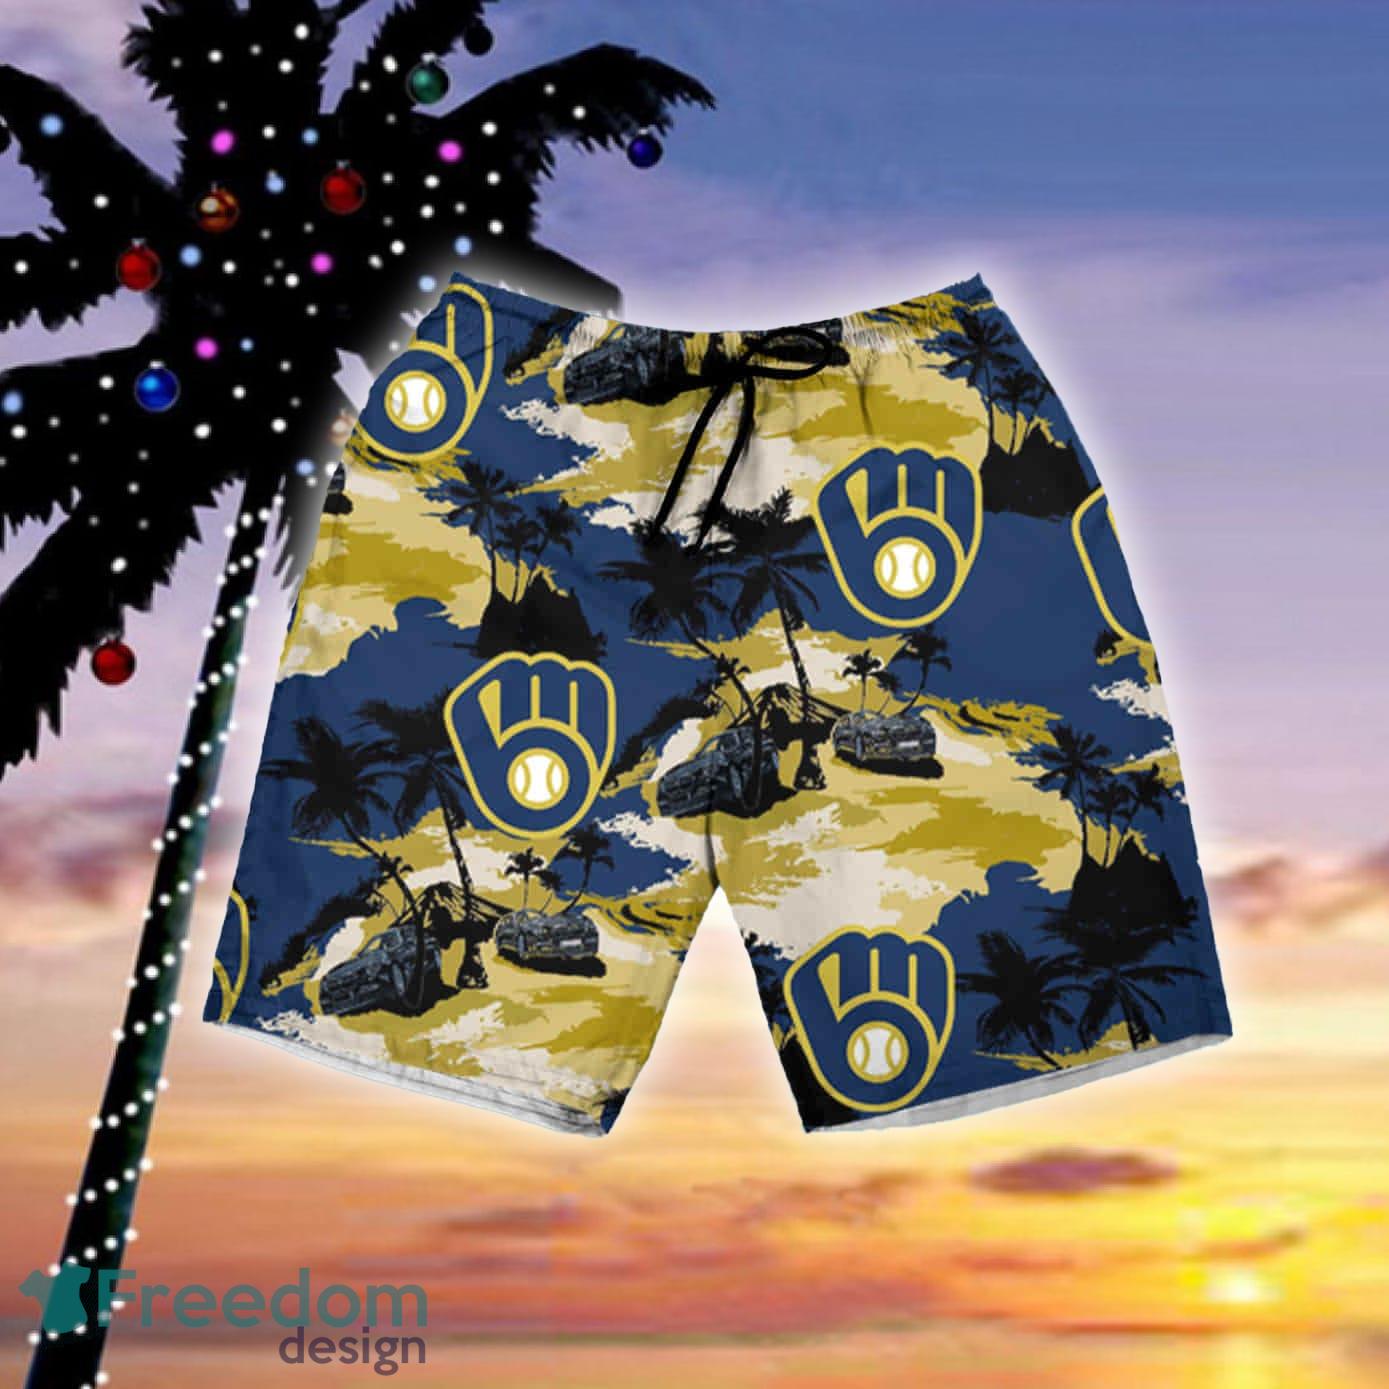 OwlOhh Milwaukee Brewers Tommy Bahama Hawaiian Shirt Summer Button Up Shirt for Men Beach Wear Short Sleeve Hawaii Shirt